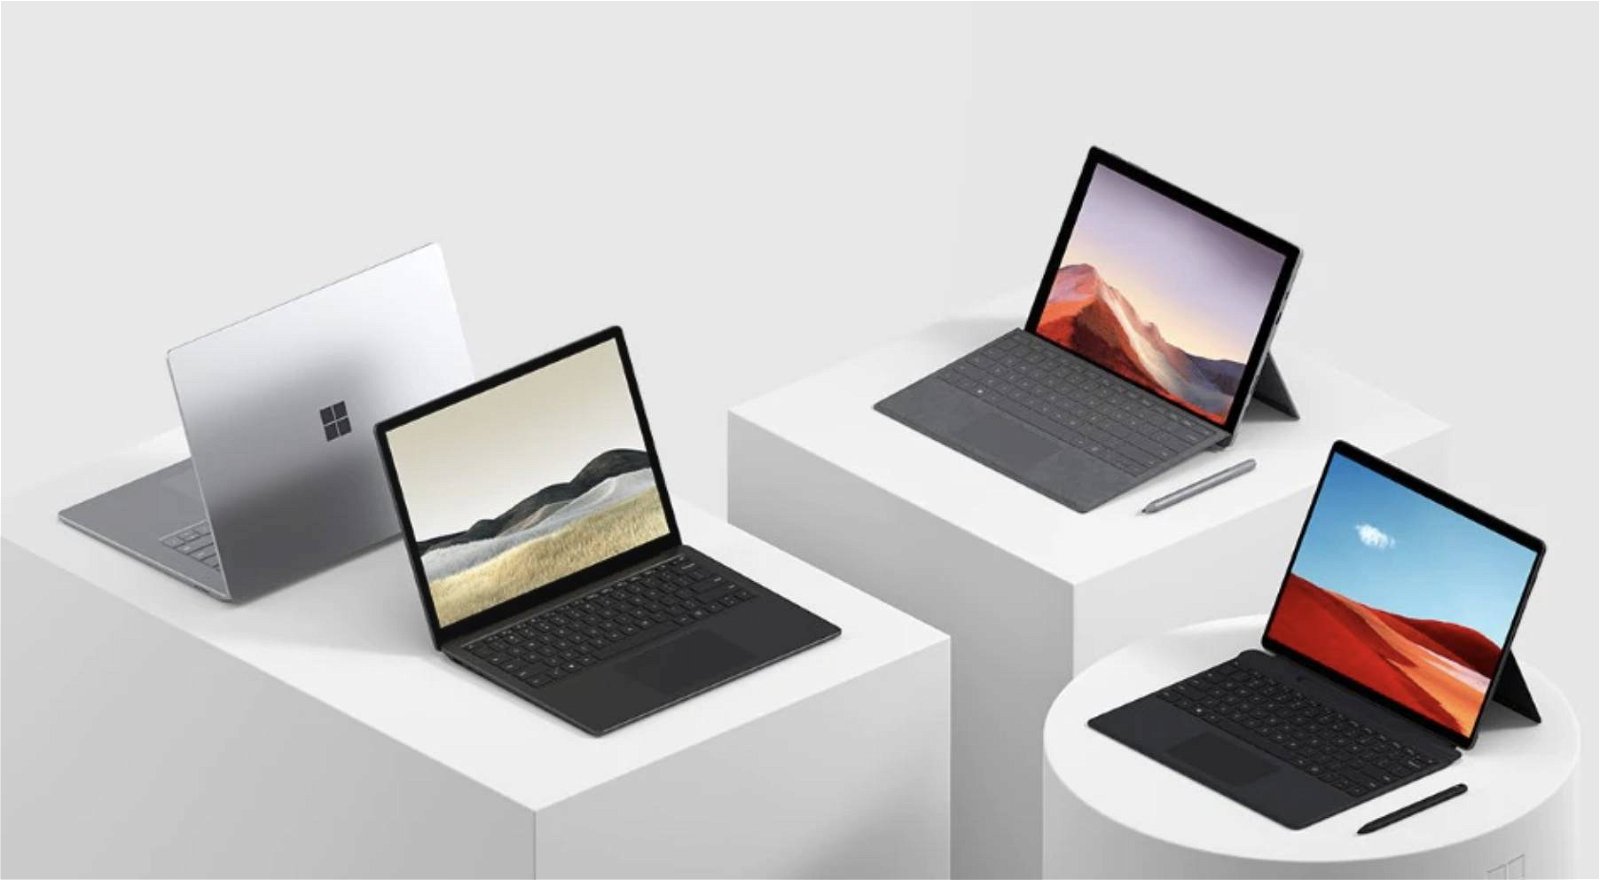 Immagine di Microsoft Surface Days: il momento giusto per acquistare un Surface, sconti fino al 30%!